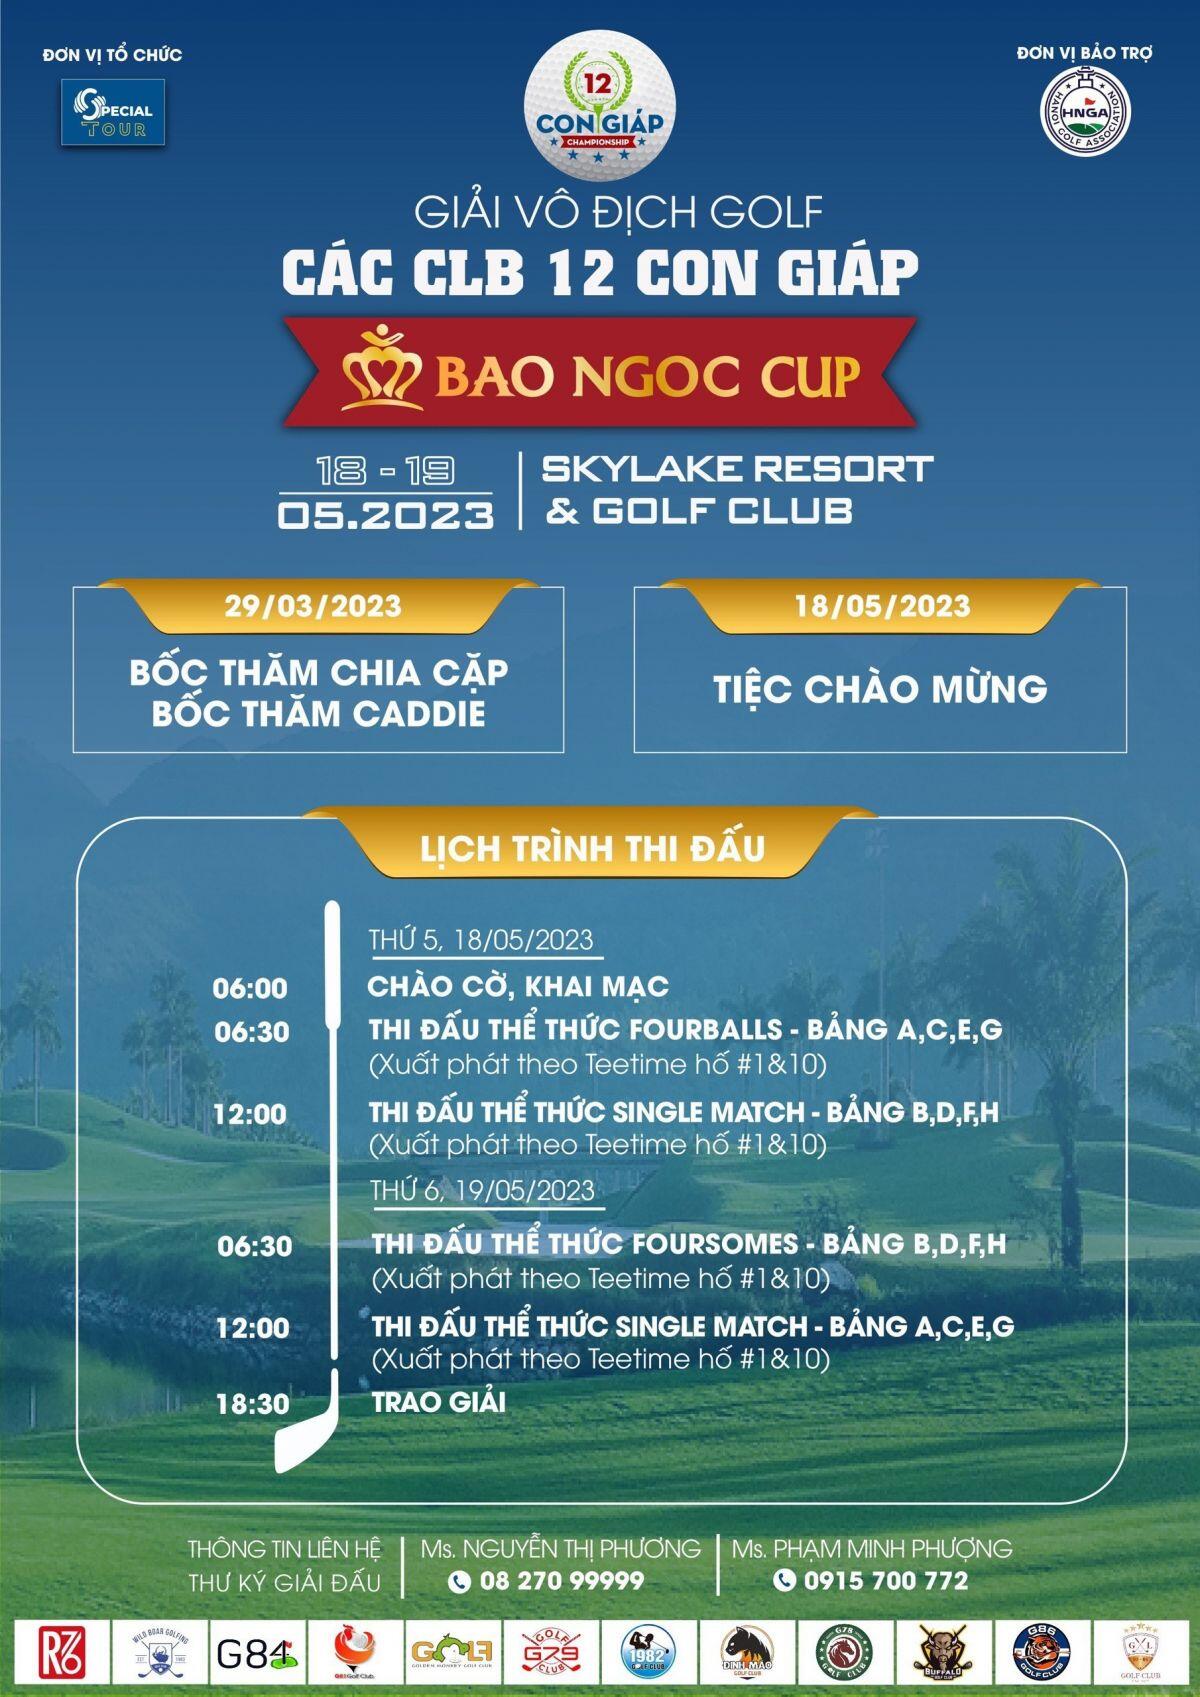 Bốc thăm chia cặp thi đấu giải golf vô địch Các CLB 12 Con Giáp 2023